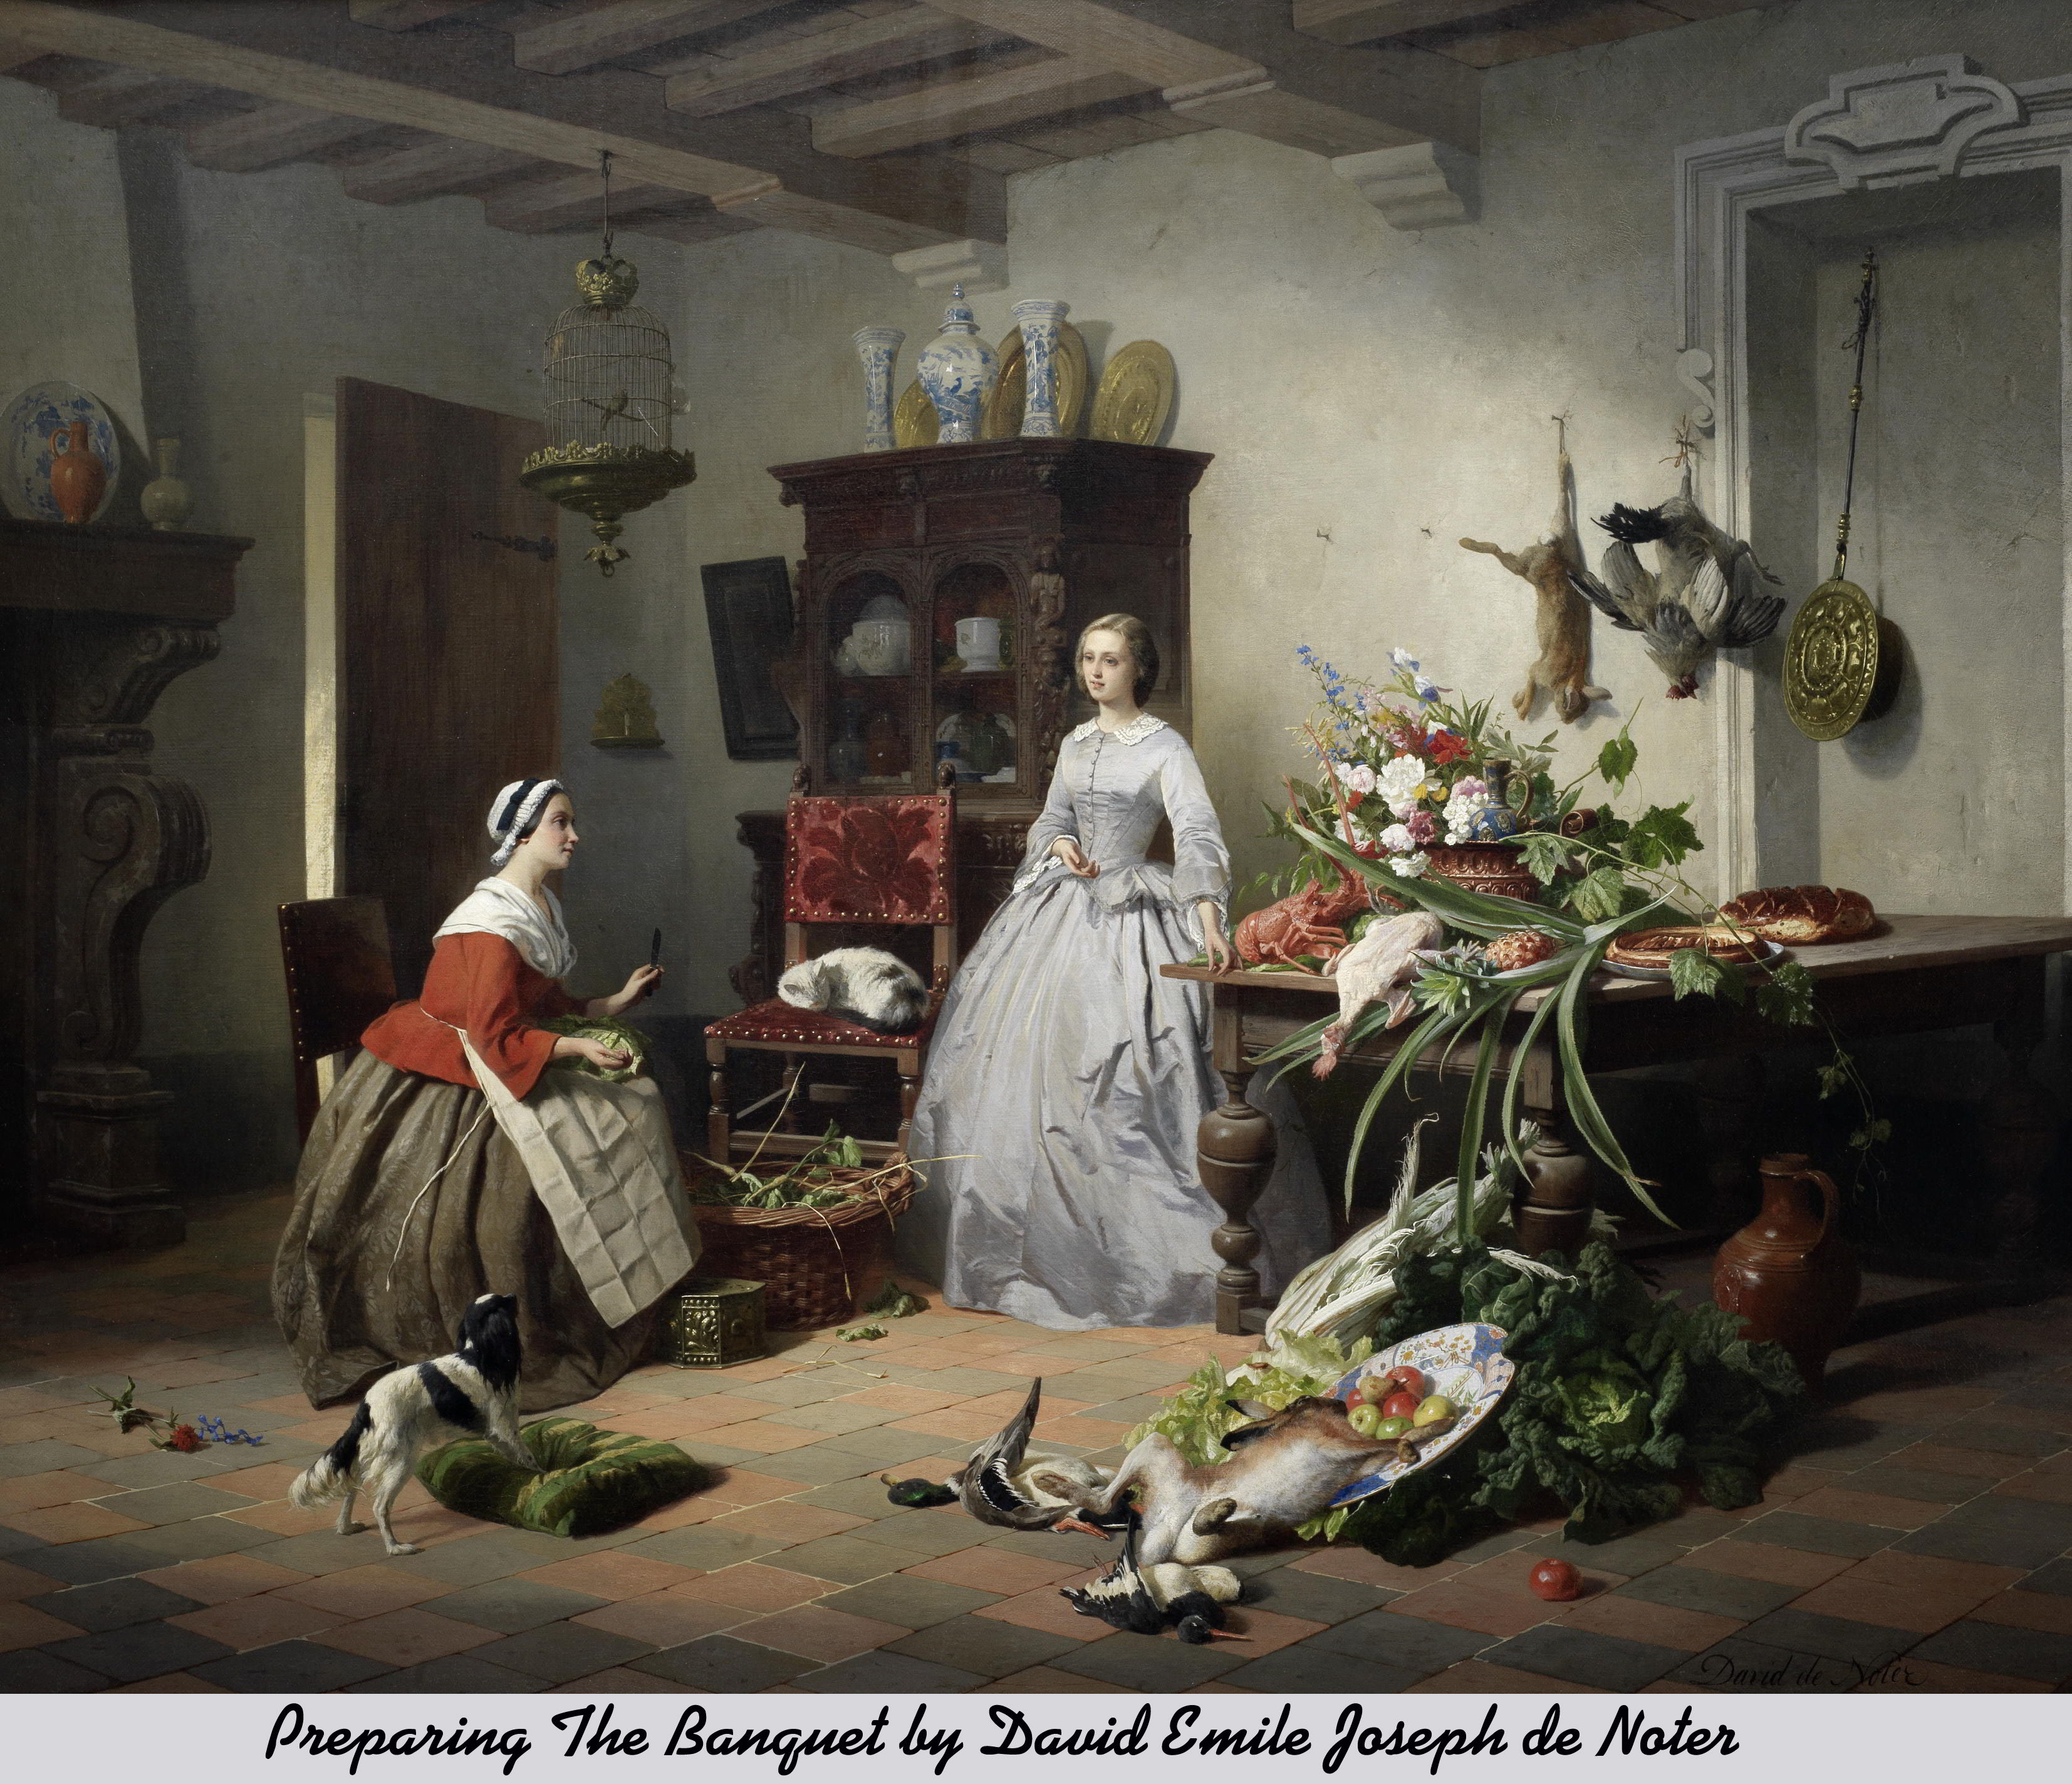 Preparing The Banquet by David Emile Joseph de Noter